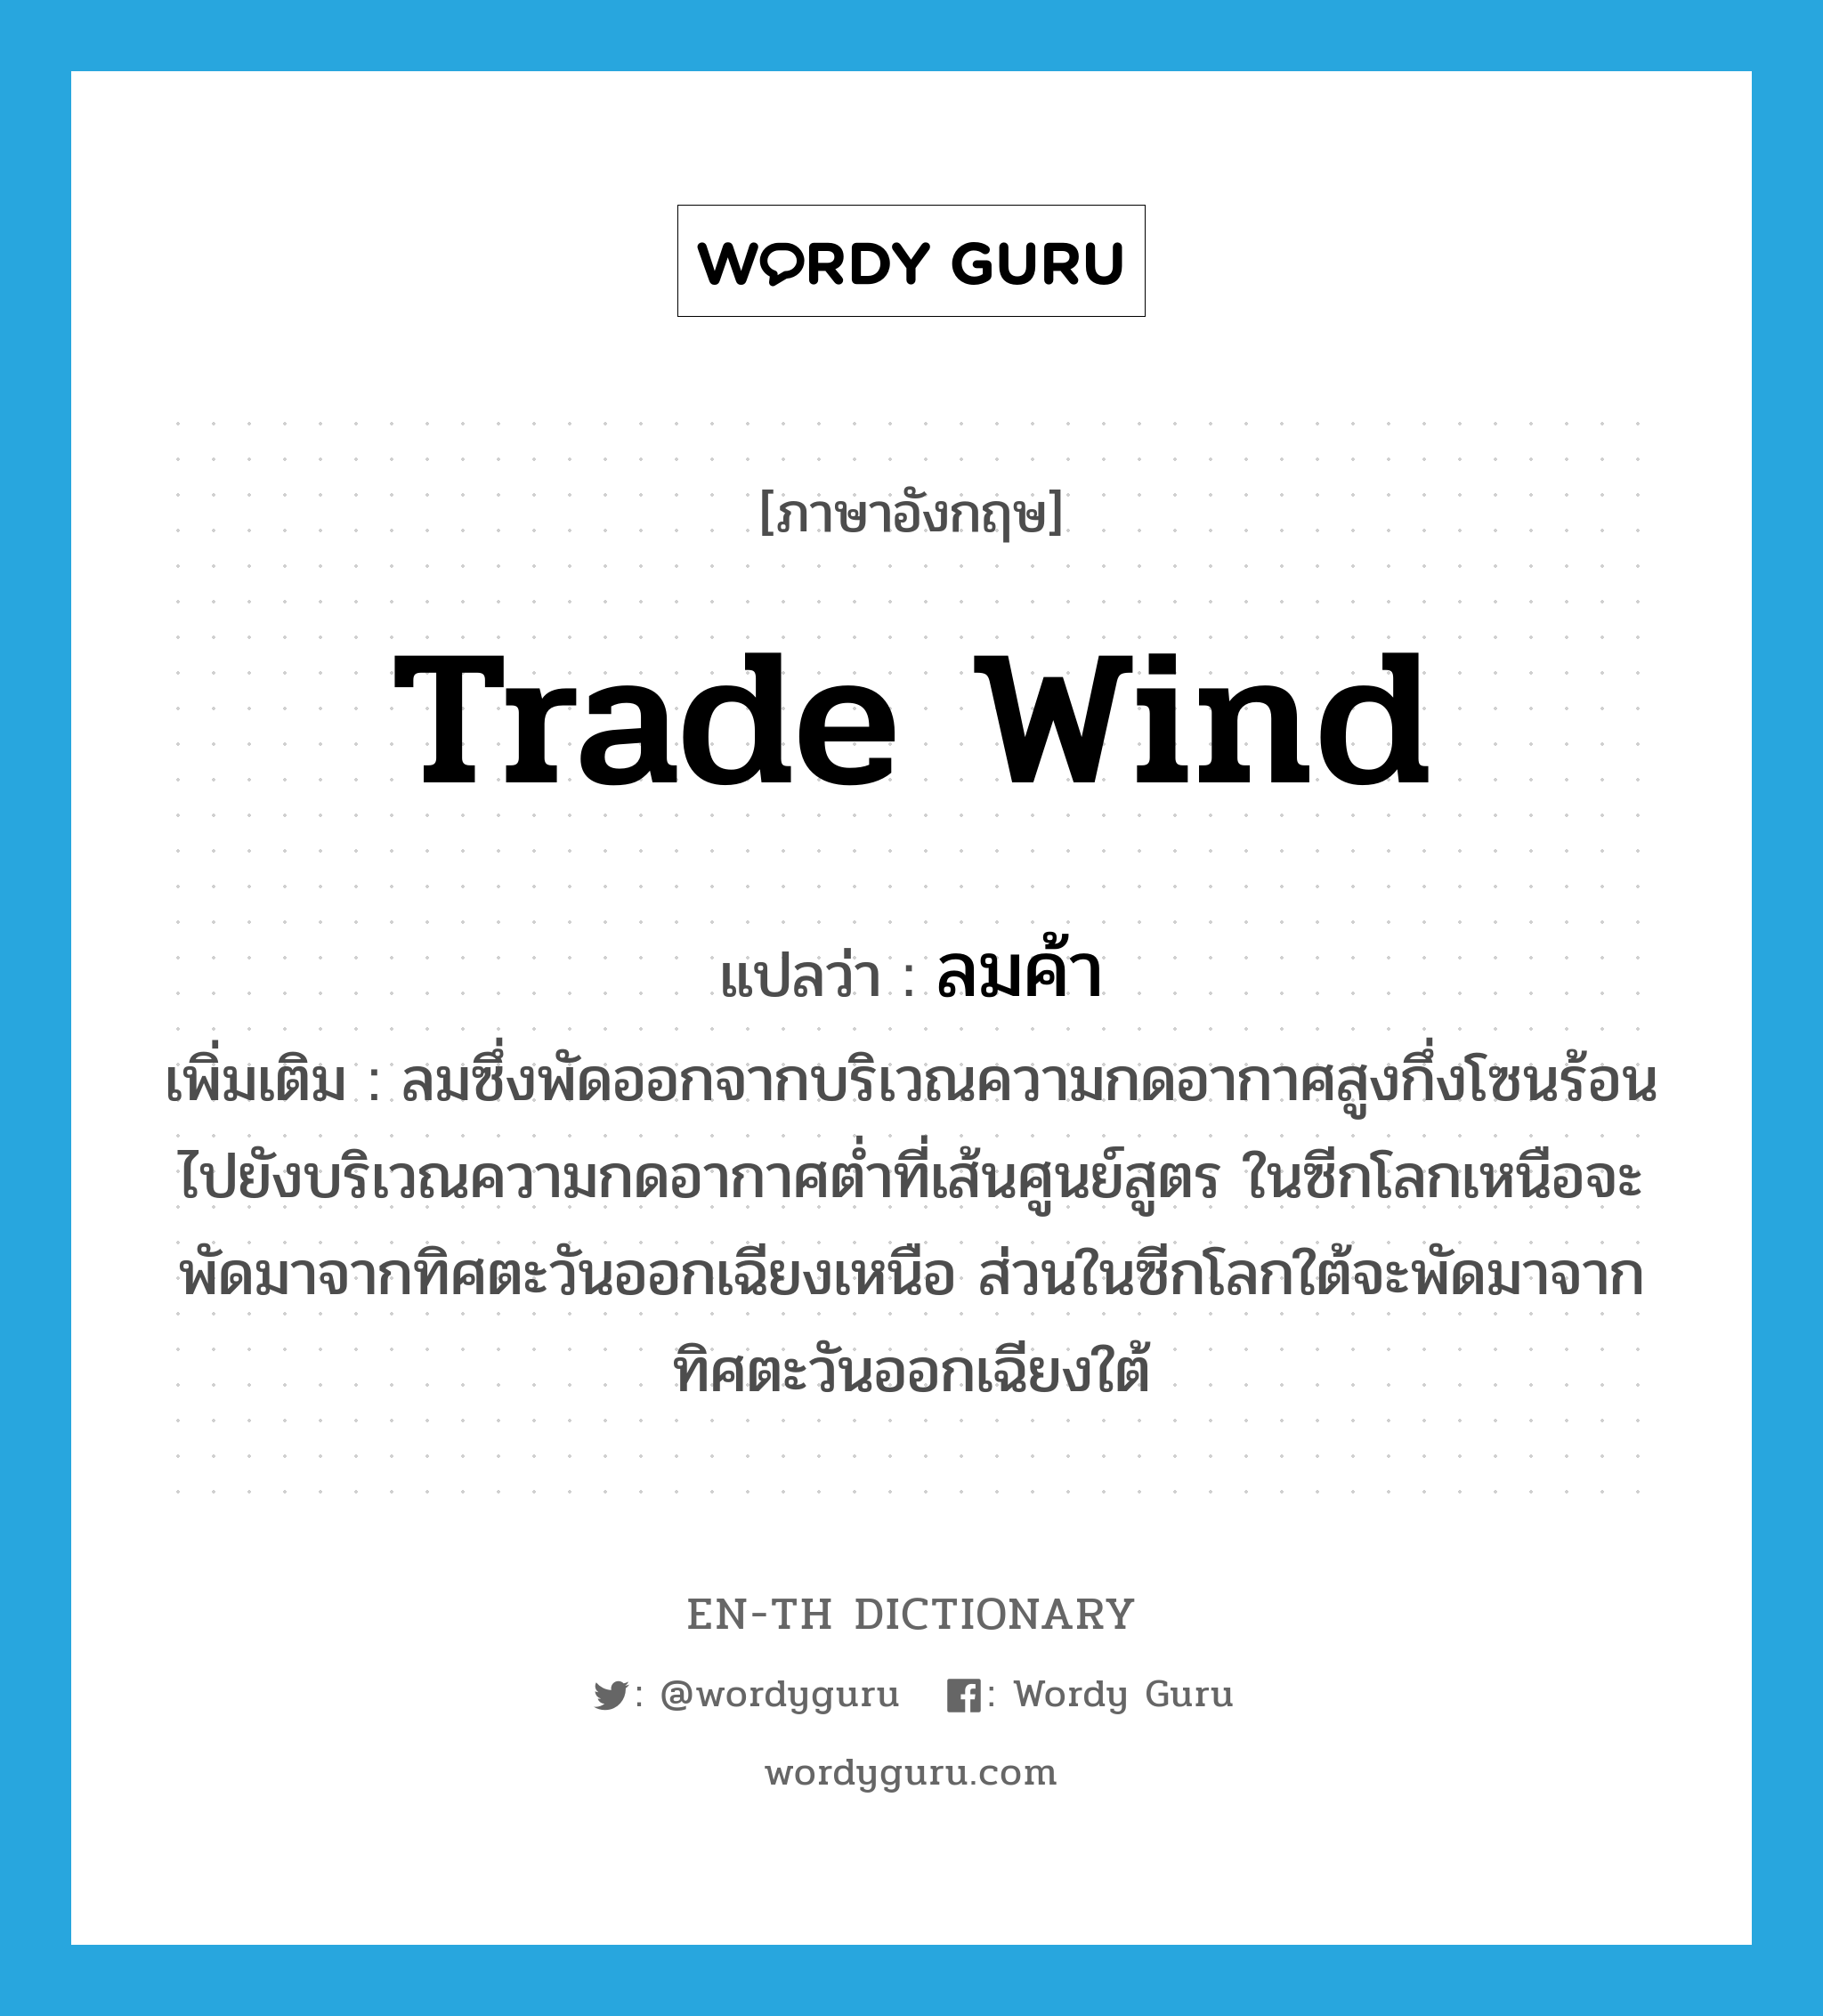 trade wind แปลว่า?, คำศัพท์ภาษาอังกฤษ trade wind แปลว่า ลมค้า ประเภท N เพิ่มเติม ลมซึ่งพัดออกจากบริเวณความกดอากาศสูงกึ่งโซนร้อนไปยังบริเวณความกดอากาศต่ำที่เส้นศูนย์สูตร ในซีกโลกเหนือจะพัดมาจากทิศตะวันออกเฉียงเหนือ ส่วนในซีกโลกใต้จะพัดมาจากทิศตะวันออกเฉียงใต้ หมวด N